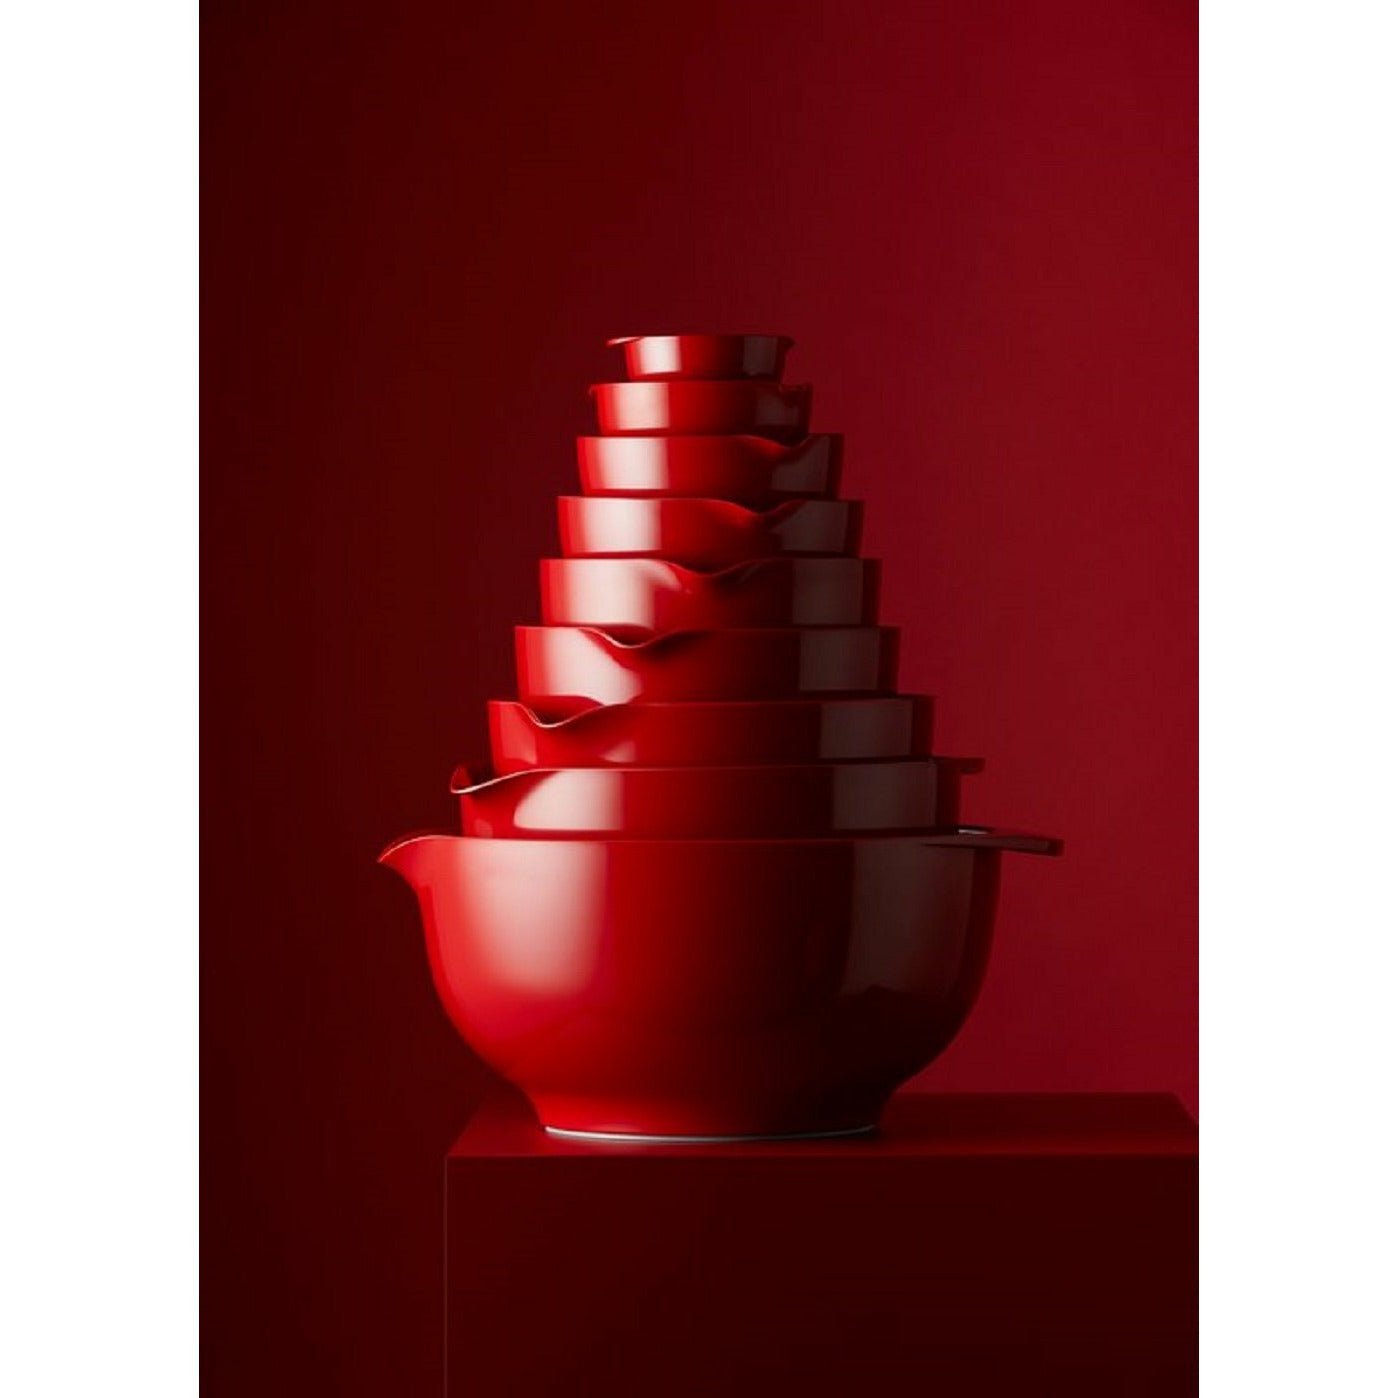 Rosti Margrethe Rührschüssel Rot, 5 Liter